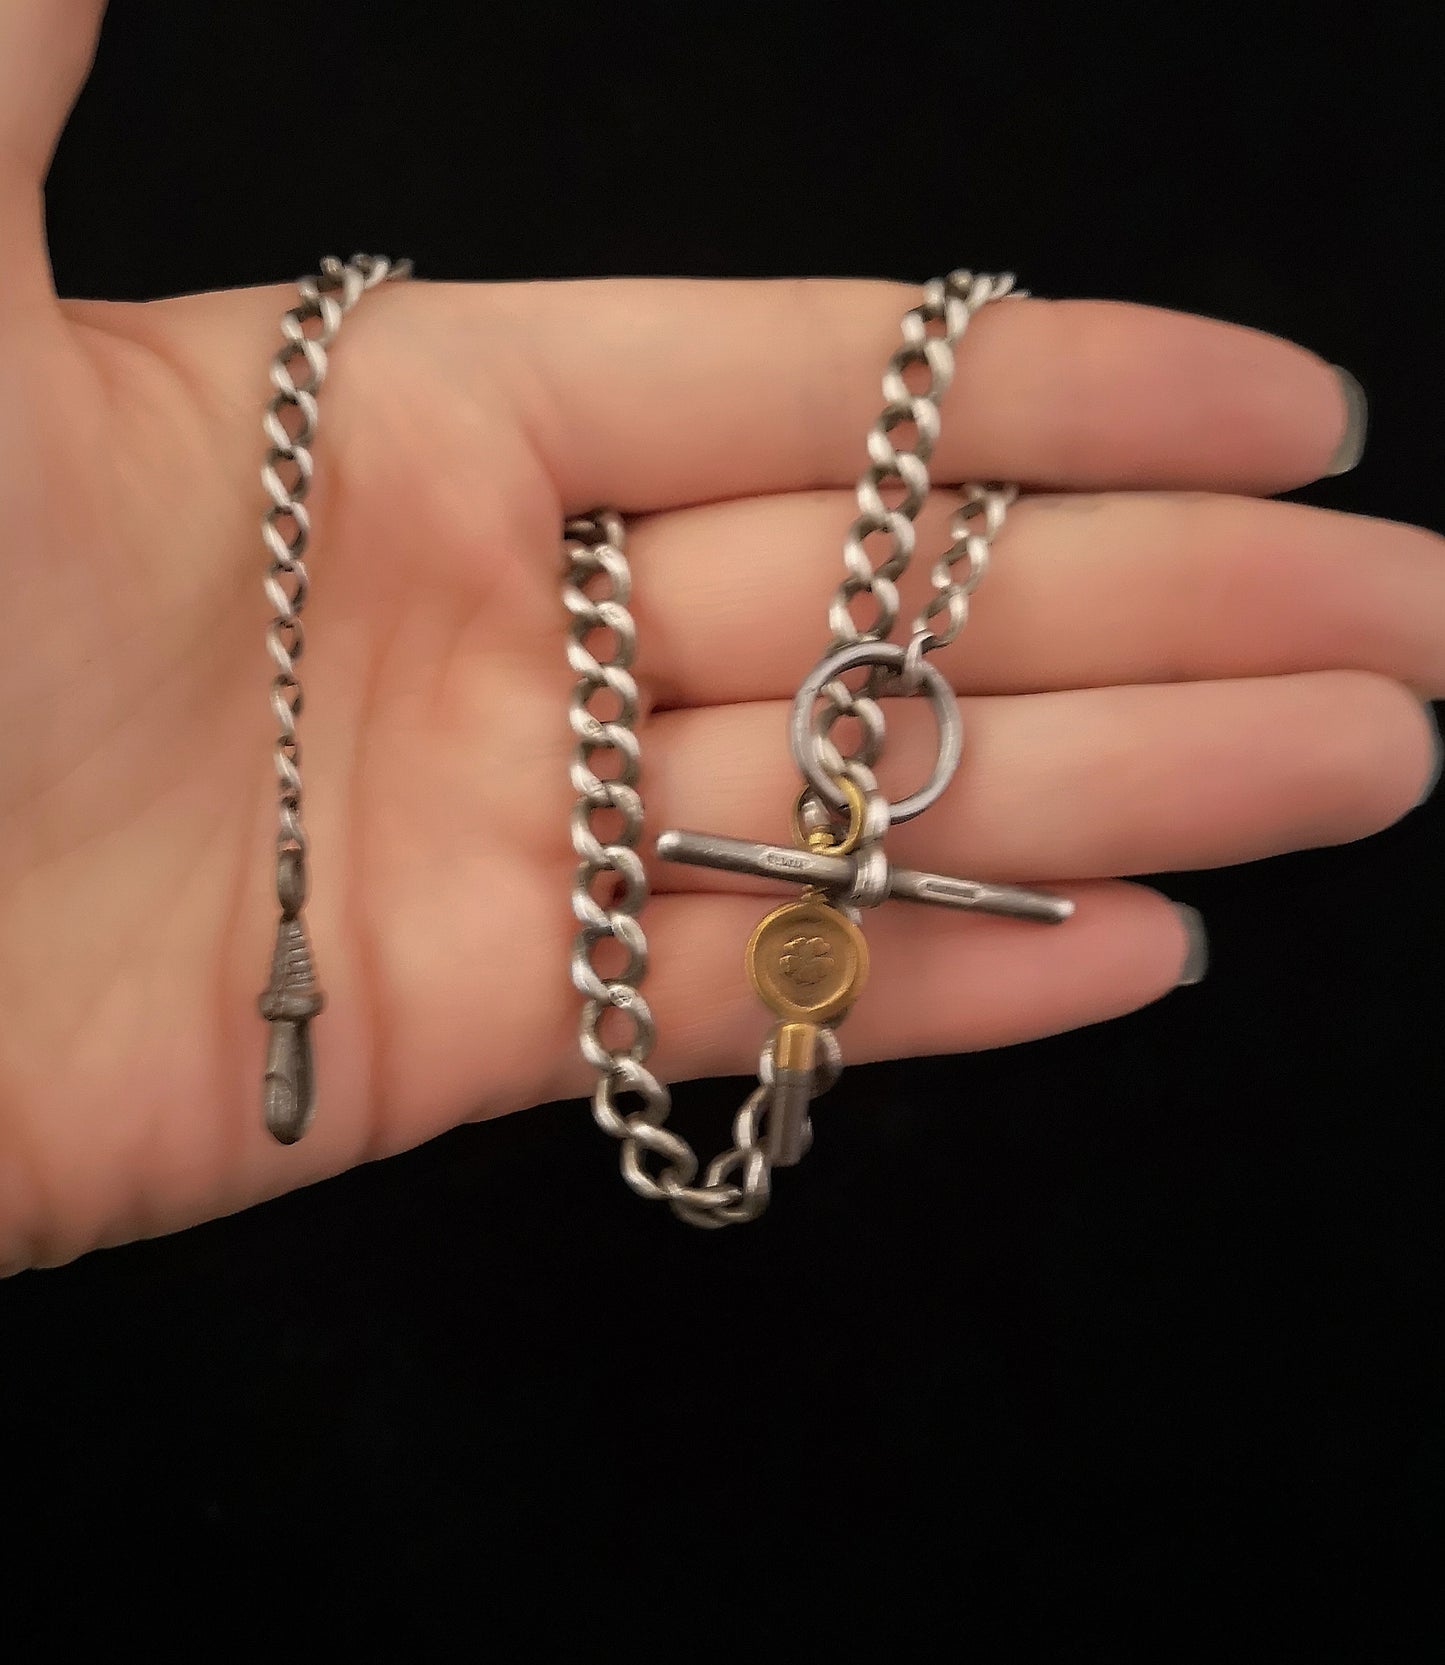 Antique Victorian silver albert chain, watch chain